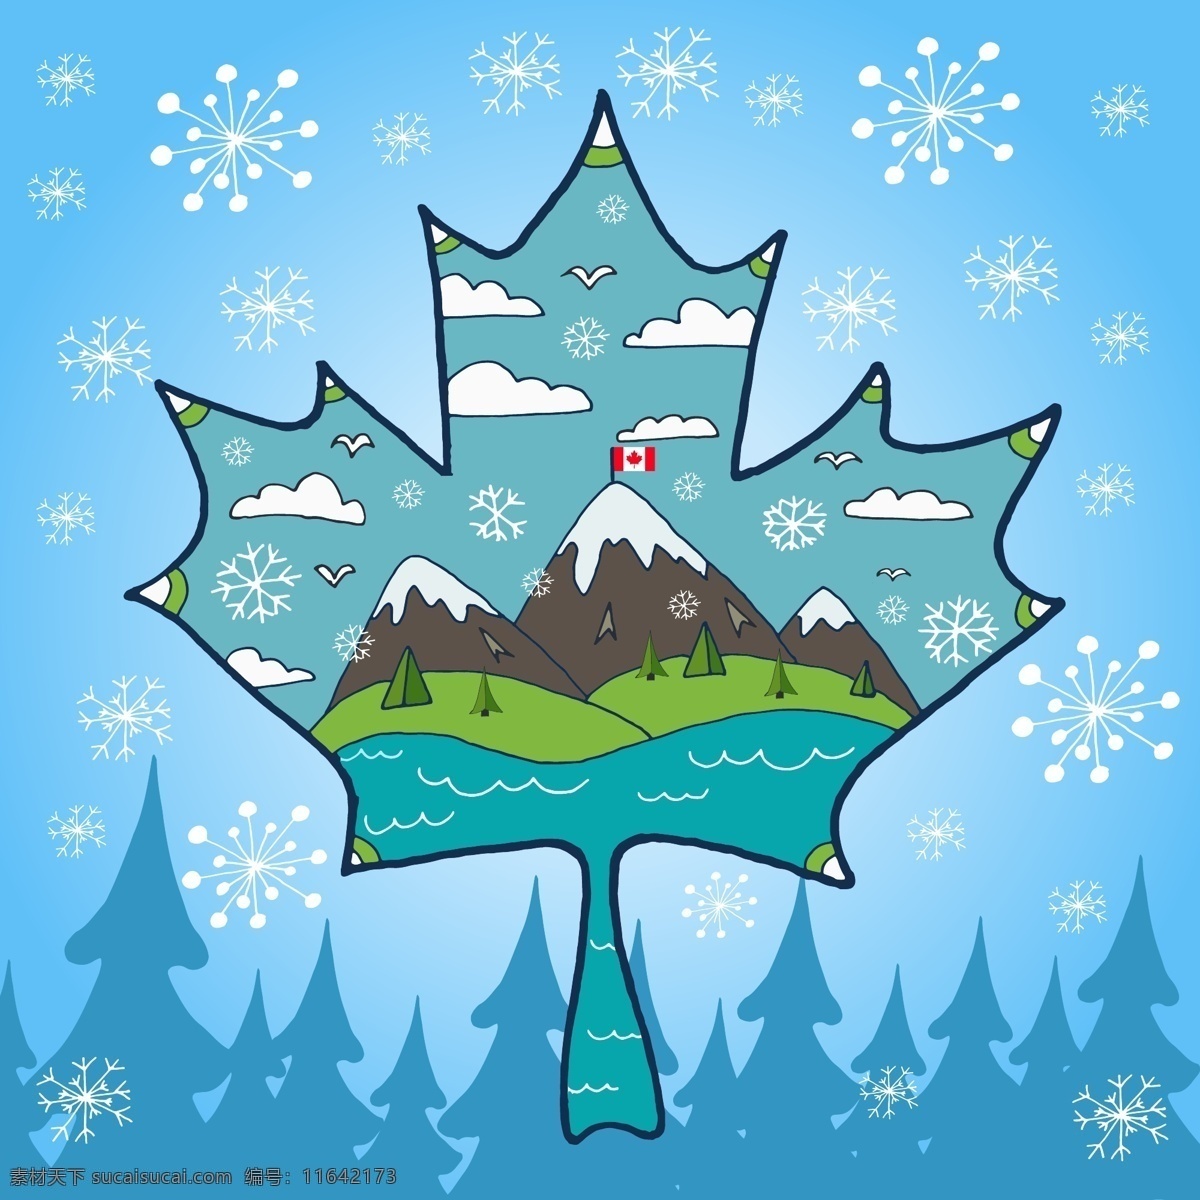 矢量 加拿大 枫叶 风景 矢量风景 矢量加拿大 加拿大枫叶 矢量枫叶 卡通枫叶 手绘枫叶 枫叶风景 创意背景 冬天背景 矢量下雪 雪花插画 矢量树木 矢量森林 加拿大风景 植物树木 自然景观 自然风光